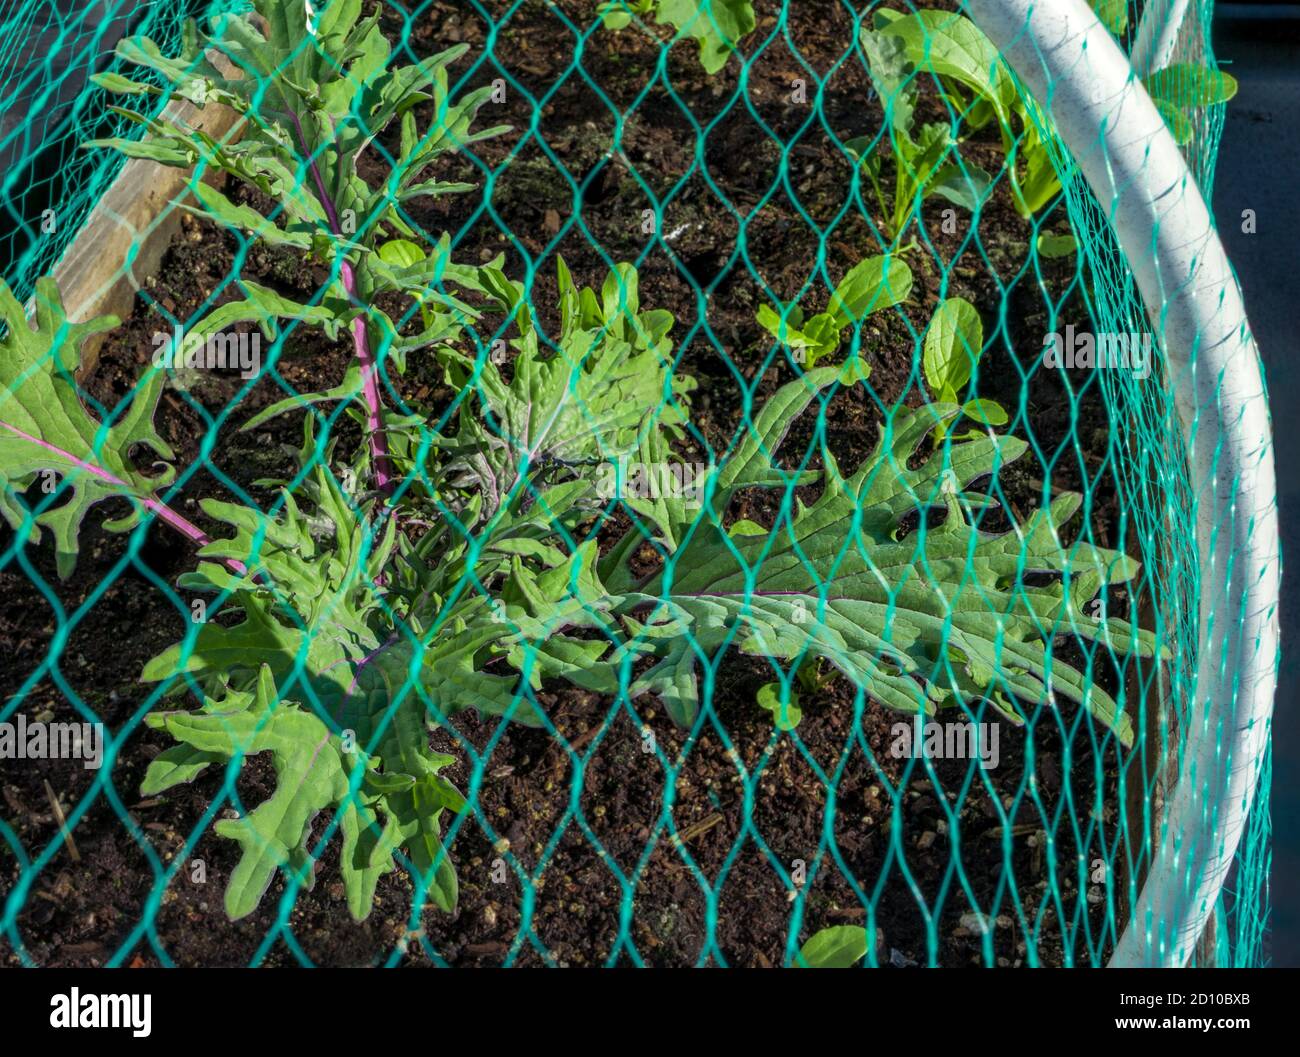 Red Russian Kale y otras plantas protegidas con redes. Protección libre de pesticidas contra la basura Mariposa Blanca: Poniendo huevos sobre las hojas. Foto de stock